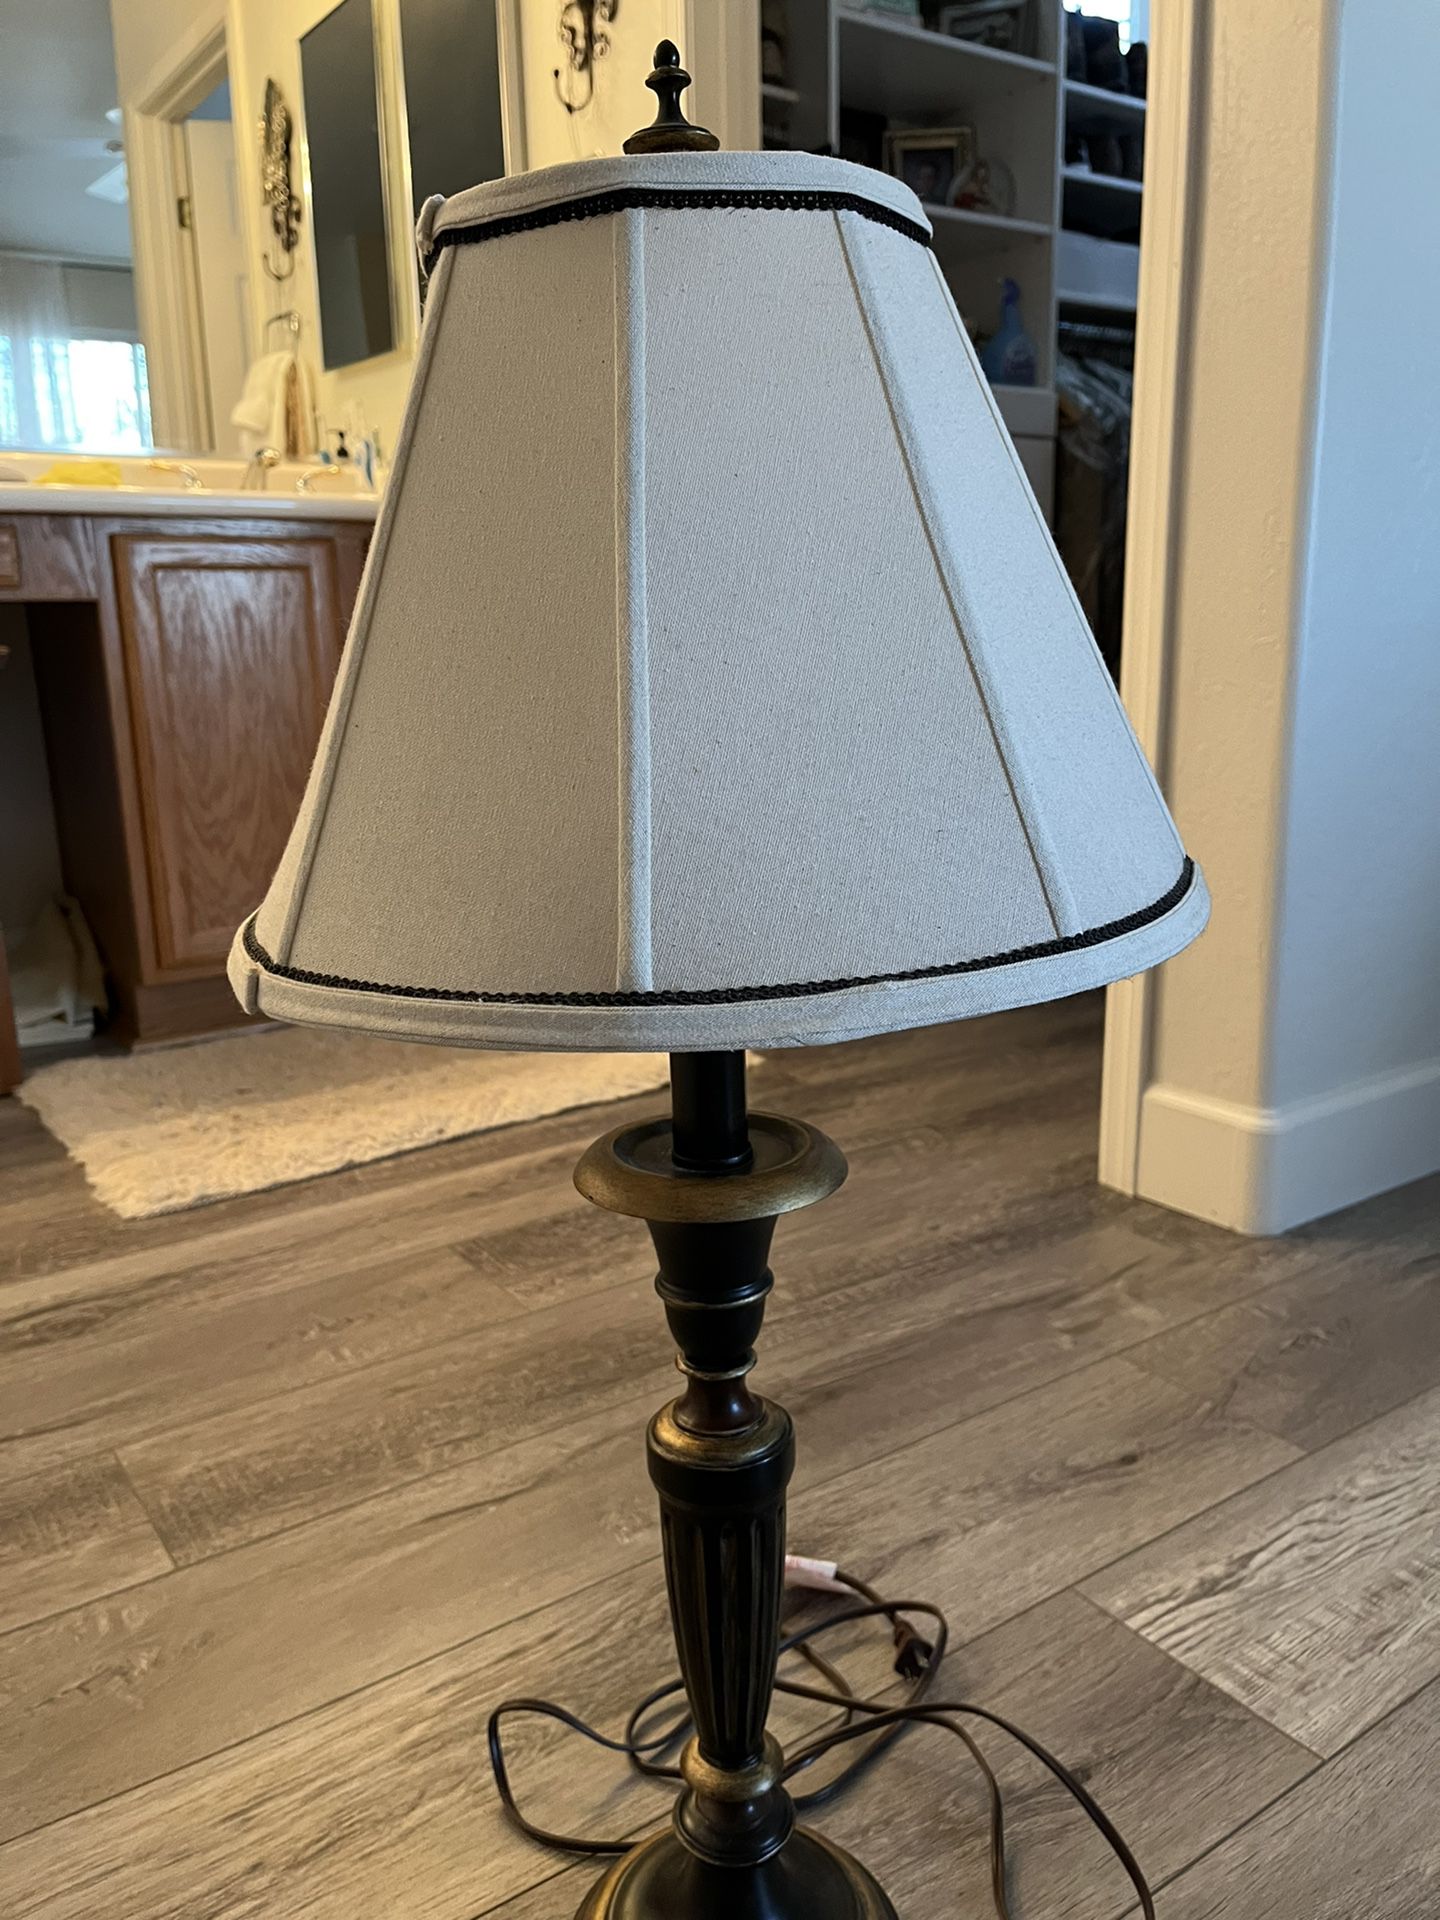 Lamp $15